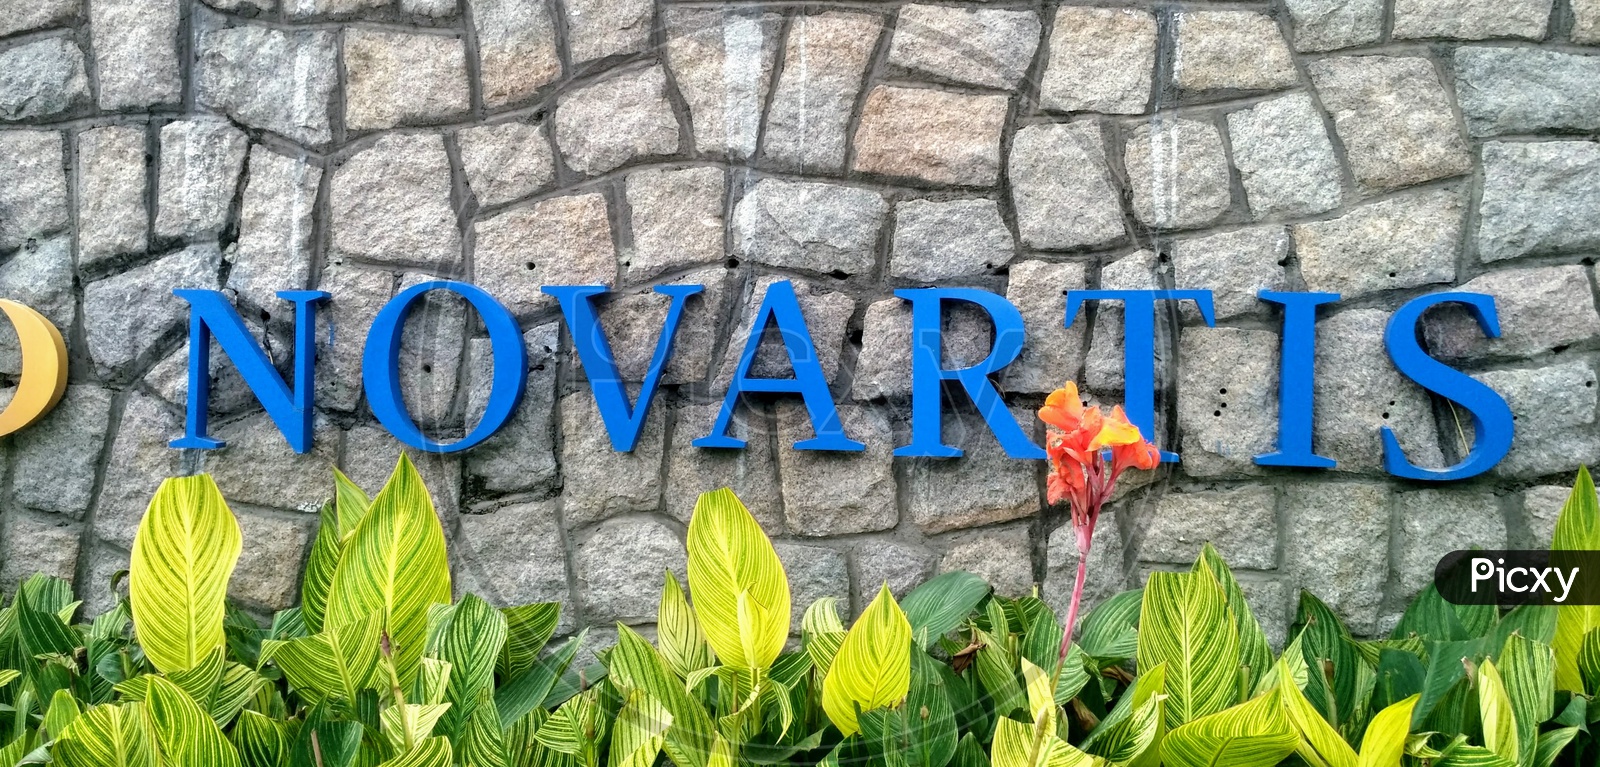 Novartis Hyderabad